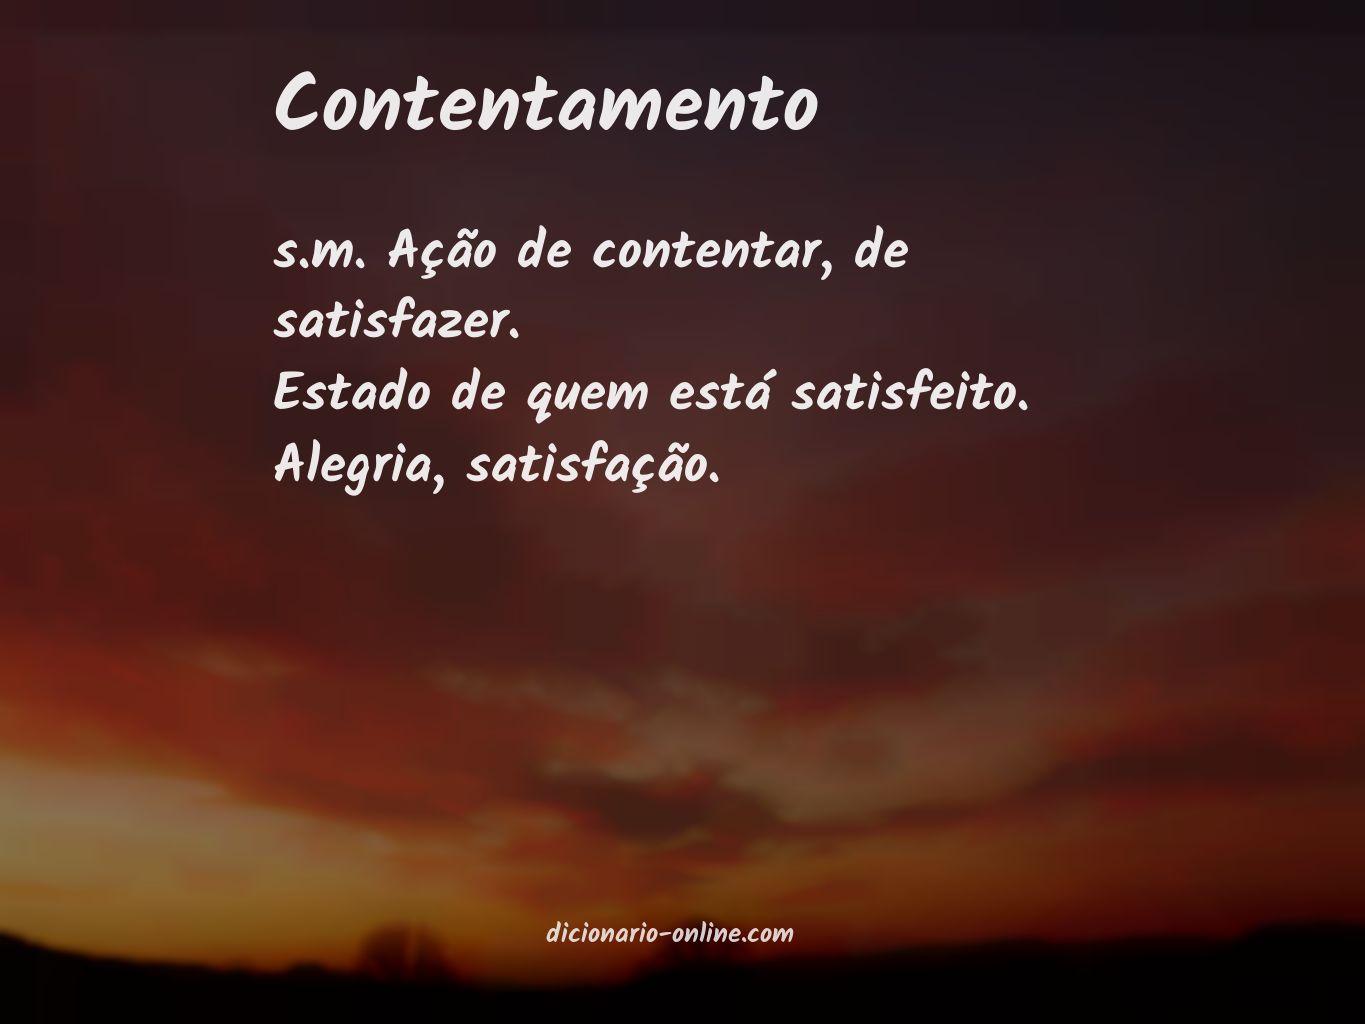 Significado de contentamento